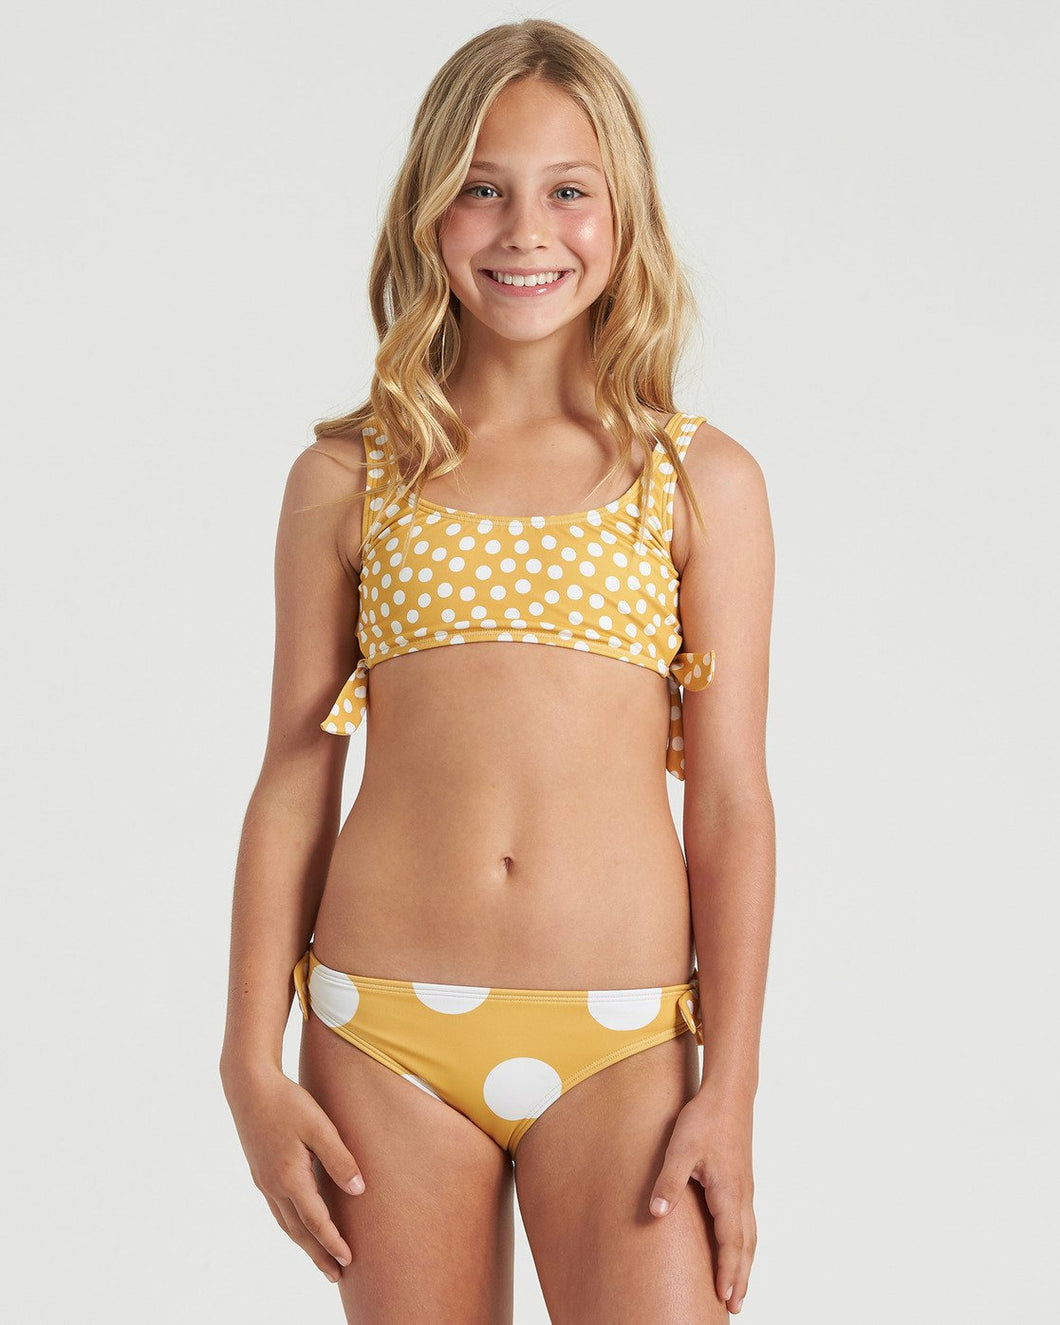 Billabong Girl's 4Ever Sunshine Hanky Tie 2 Piece Bikini Set